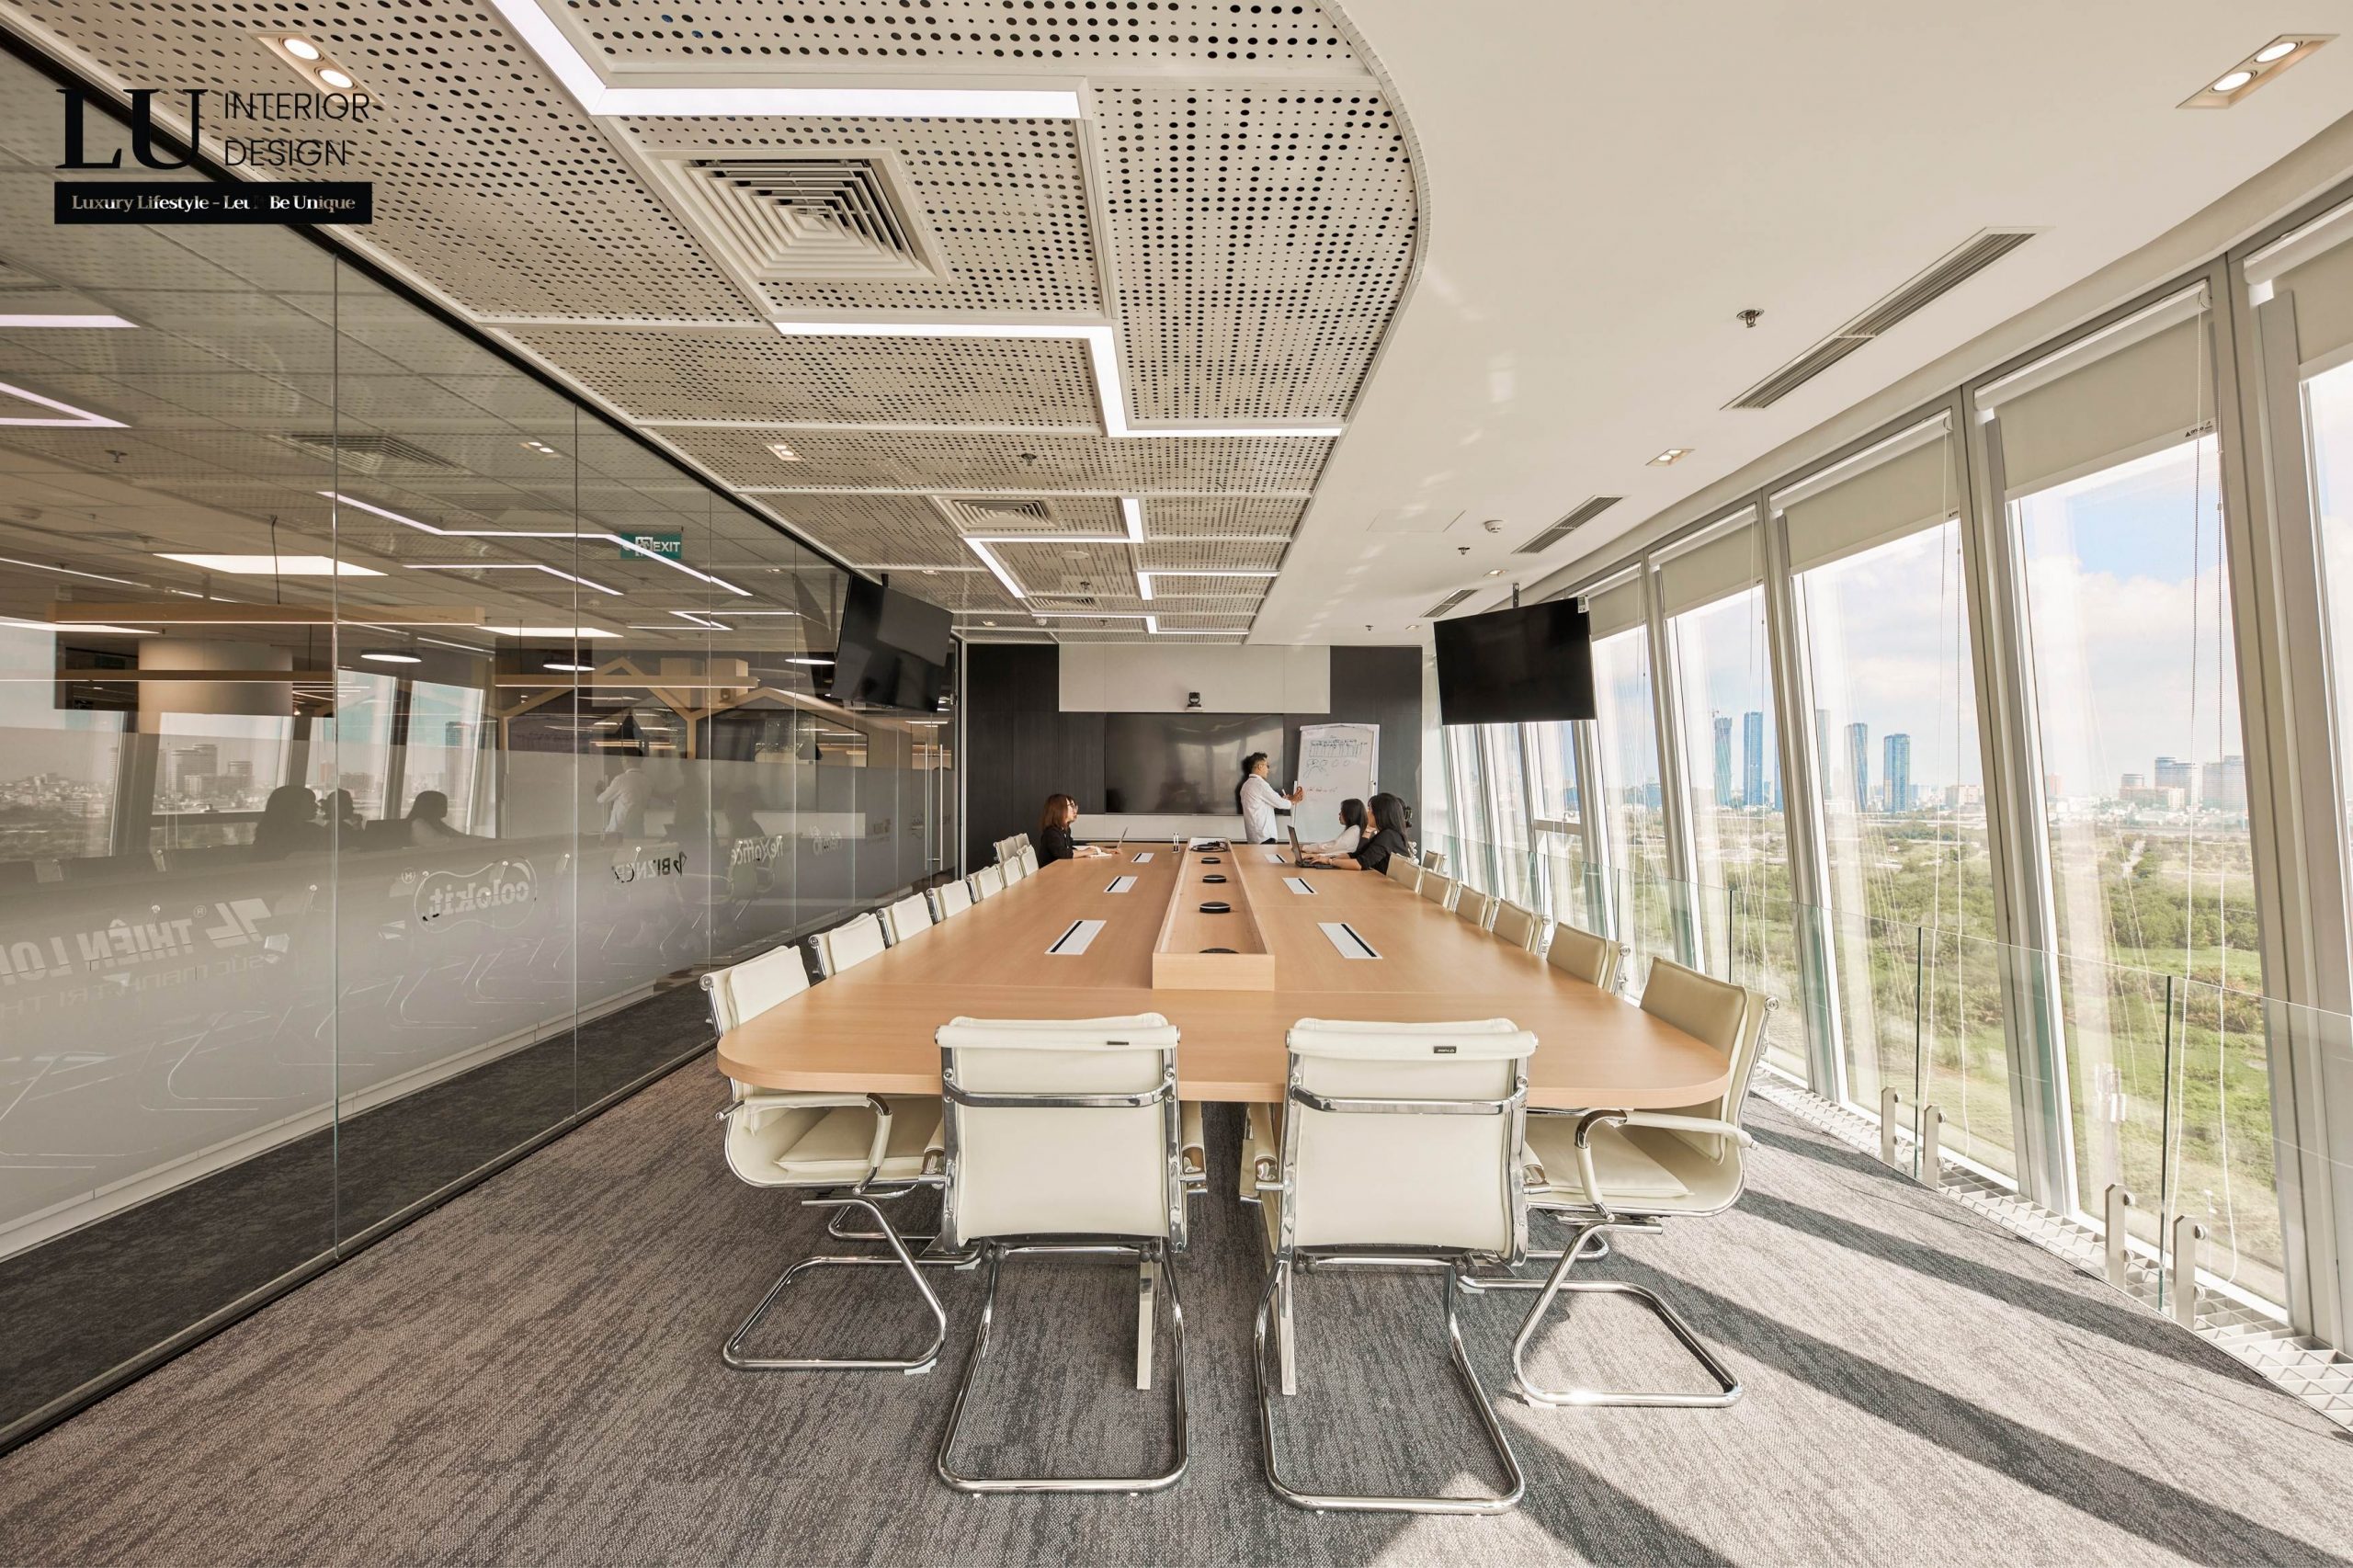 Phòng họp chính còn là nơi đàm phán thương lượng cùng các đối tác, vì vậy được các KTS đặc biệt chú trọng trong yếu tố thiết kế.